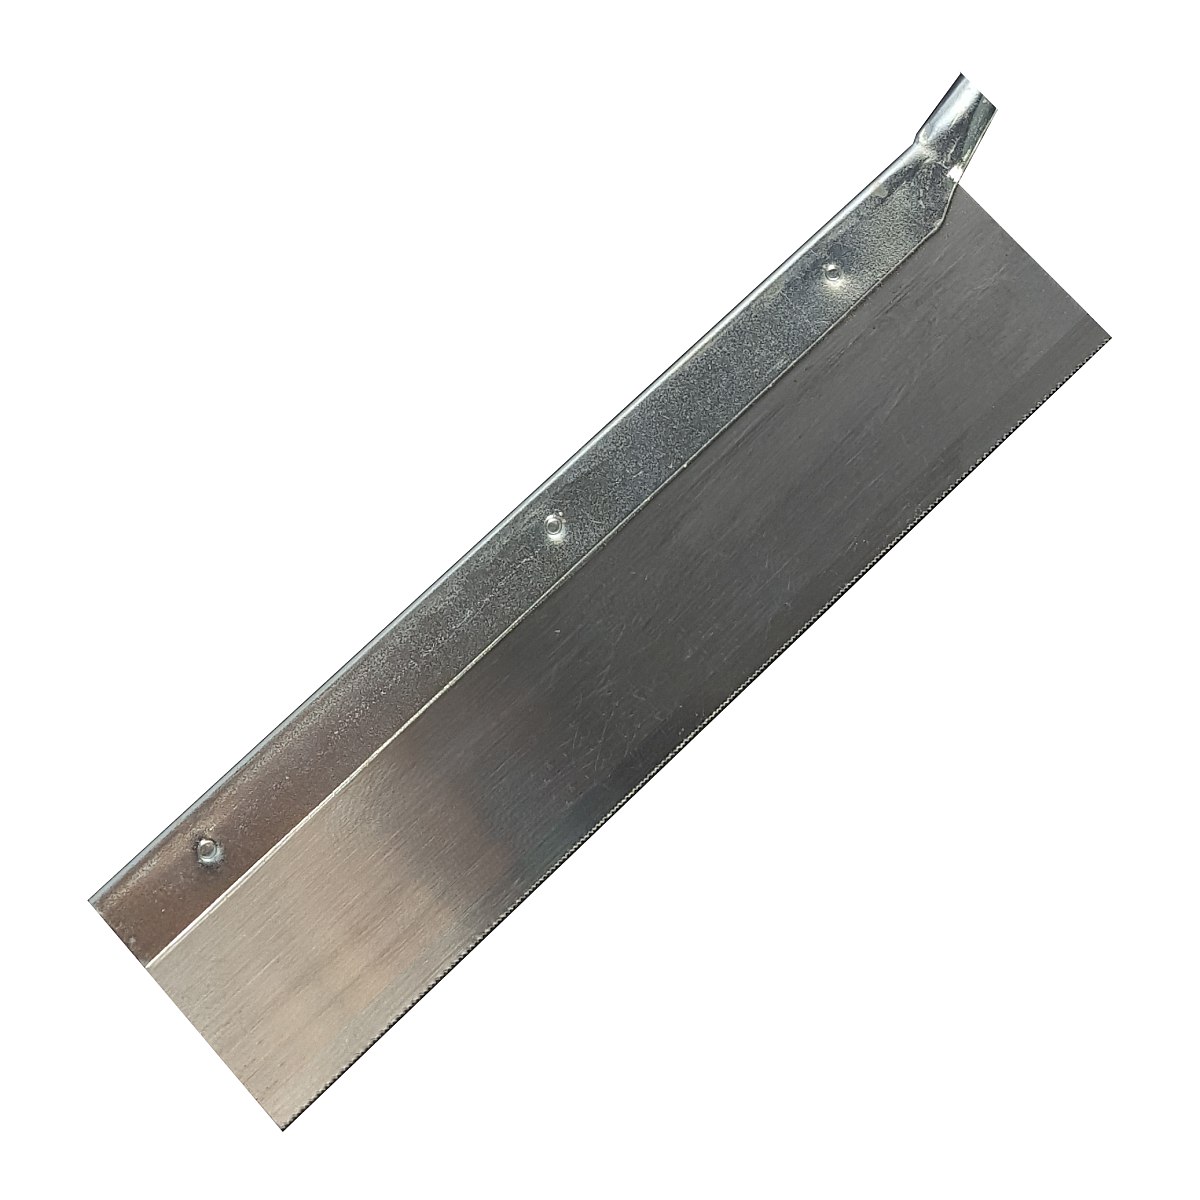 Precision saw blade (spare)